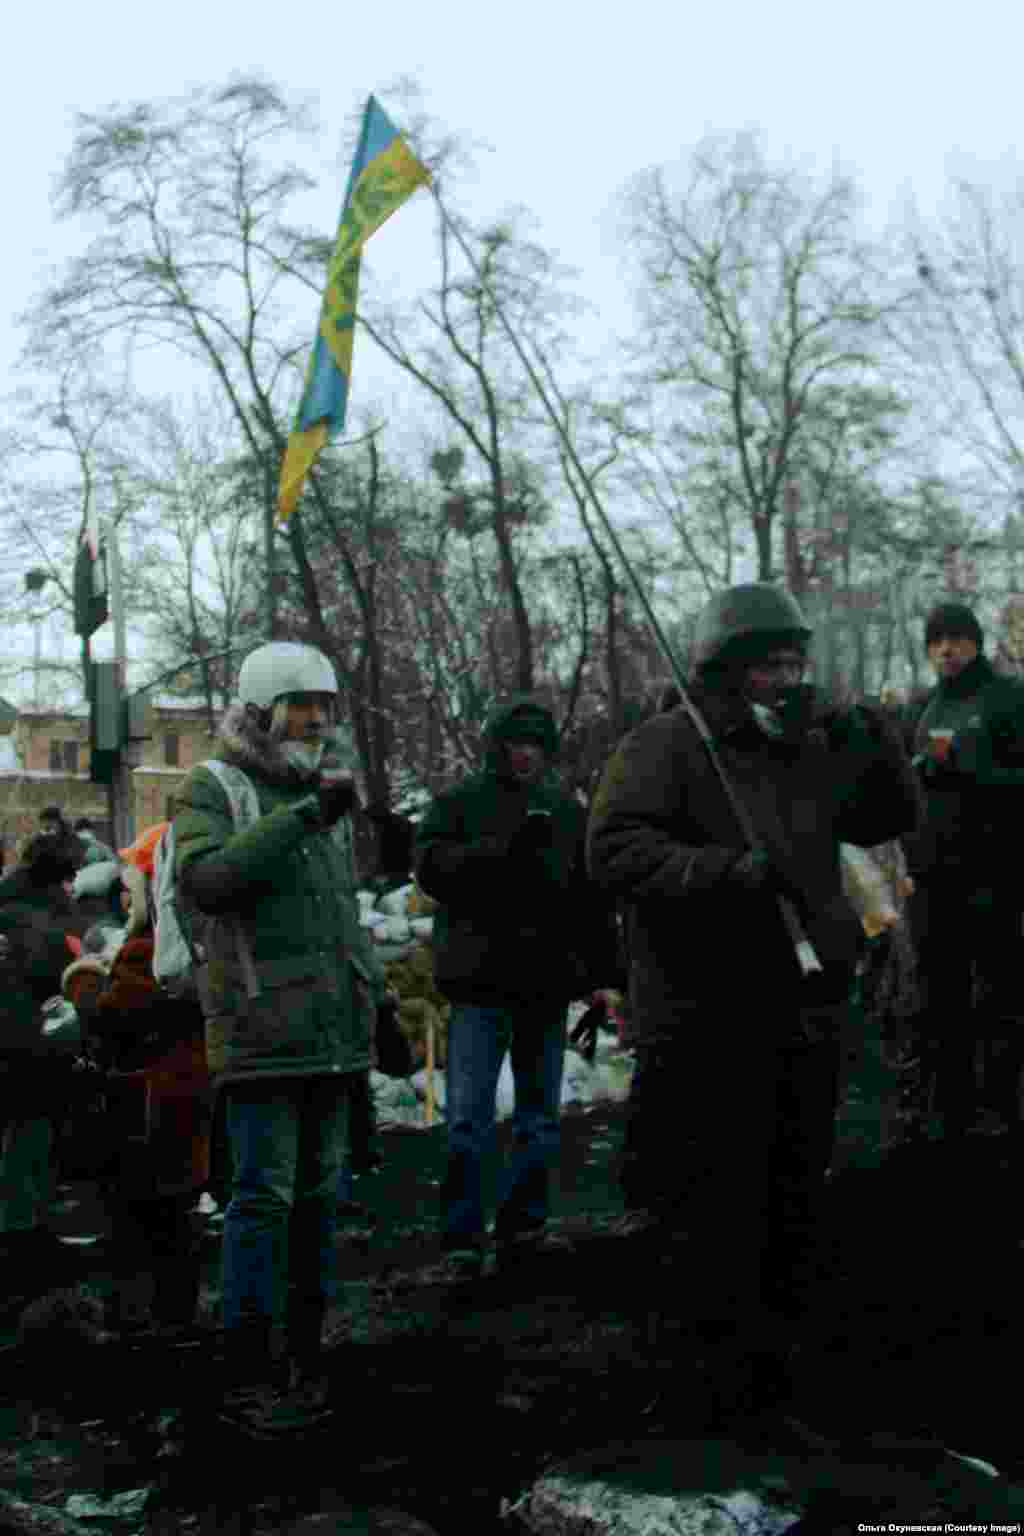 Протестующие пьют чай на баррикадах. Его раздают волонтеры, которые регулярно подносят не только горячие напитки, но и еду